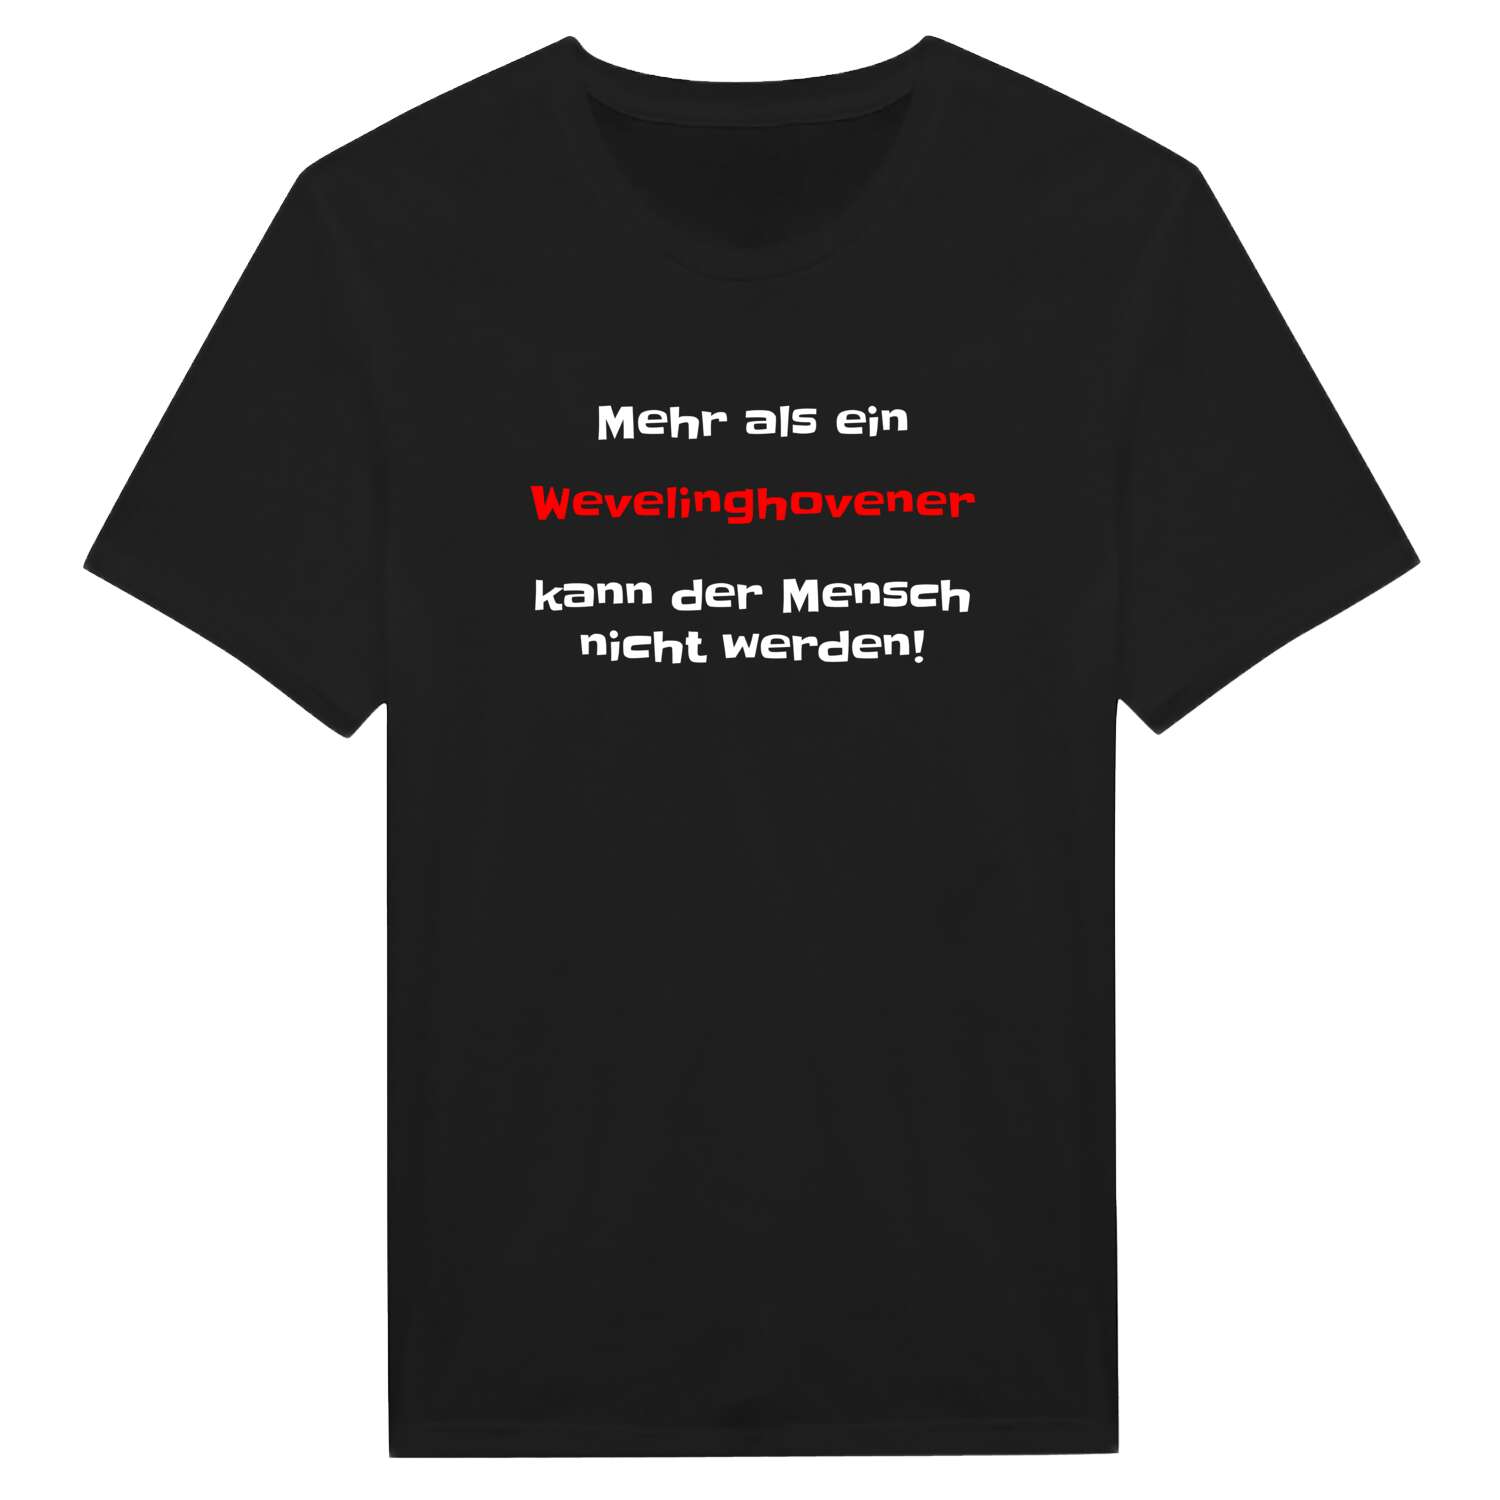 Wevelinghoven T-Shirt »Mehr als ein«